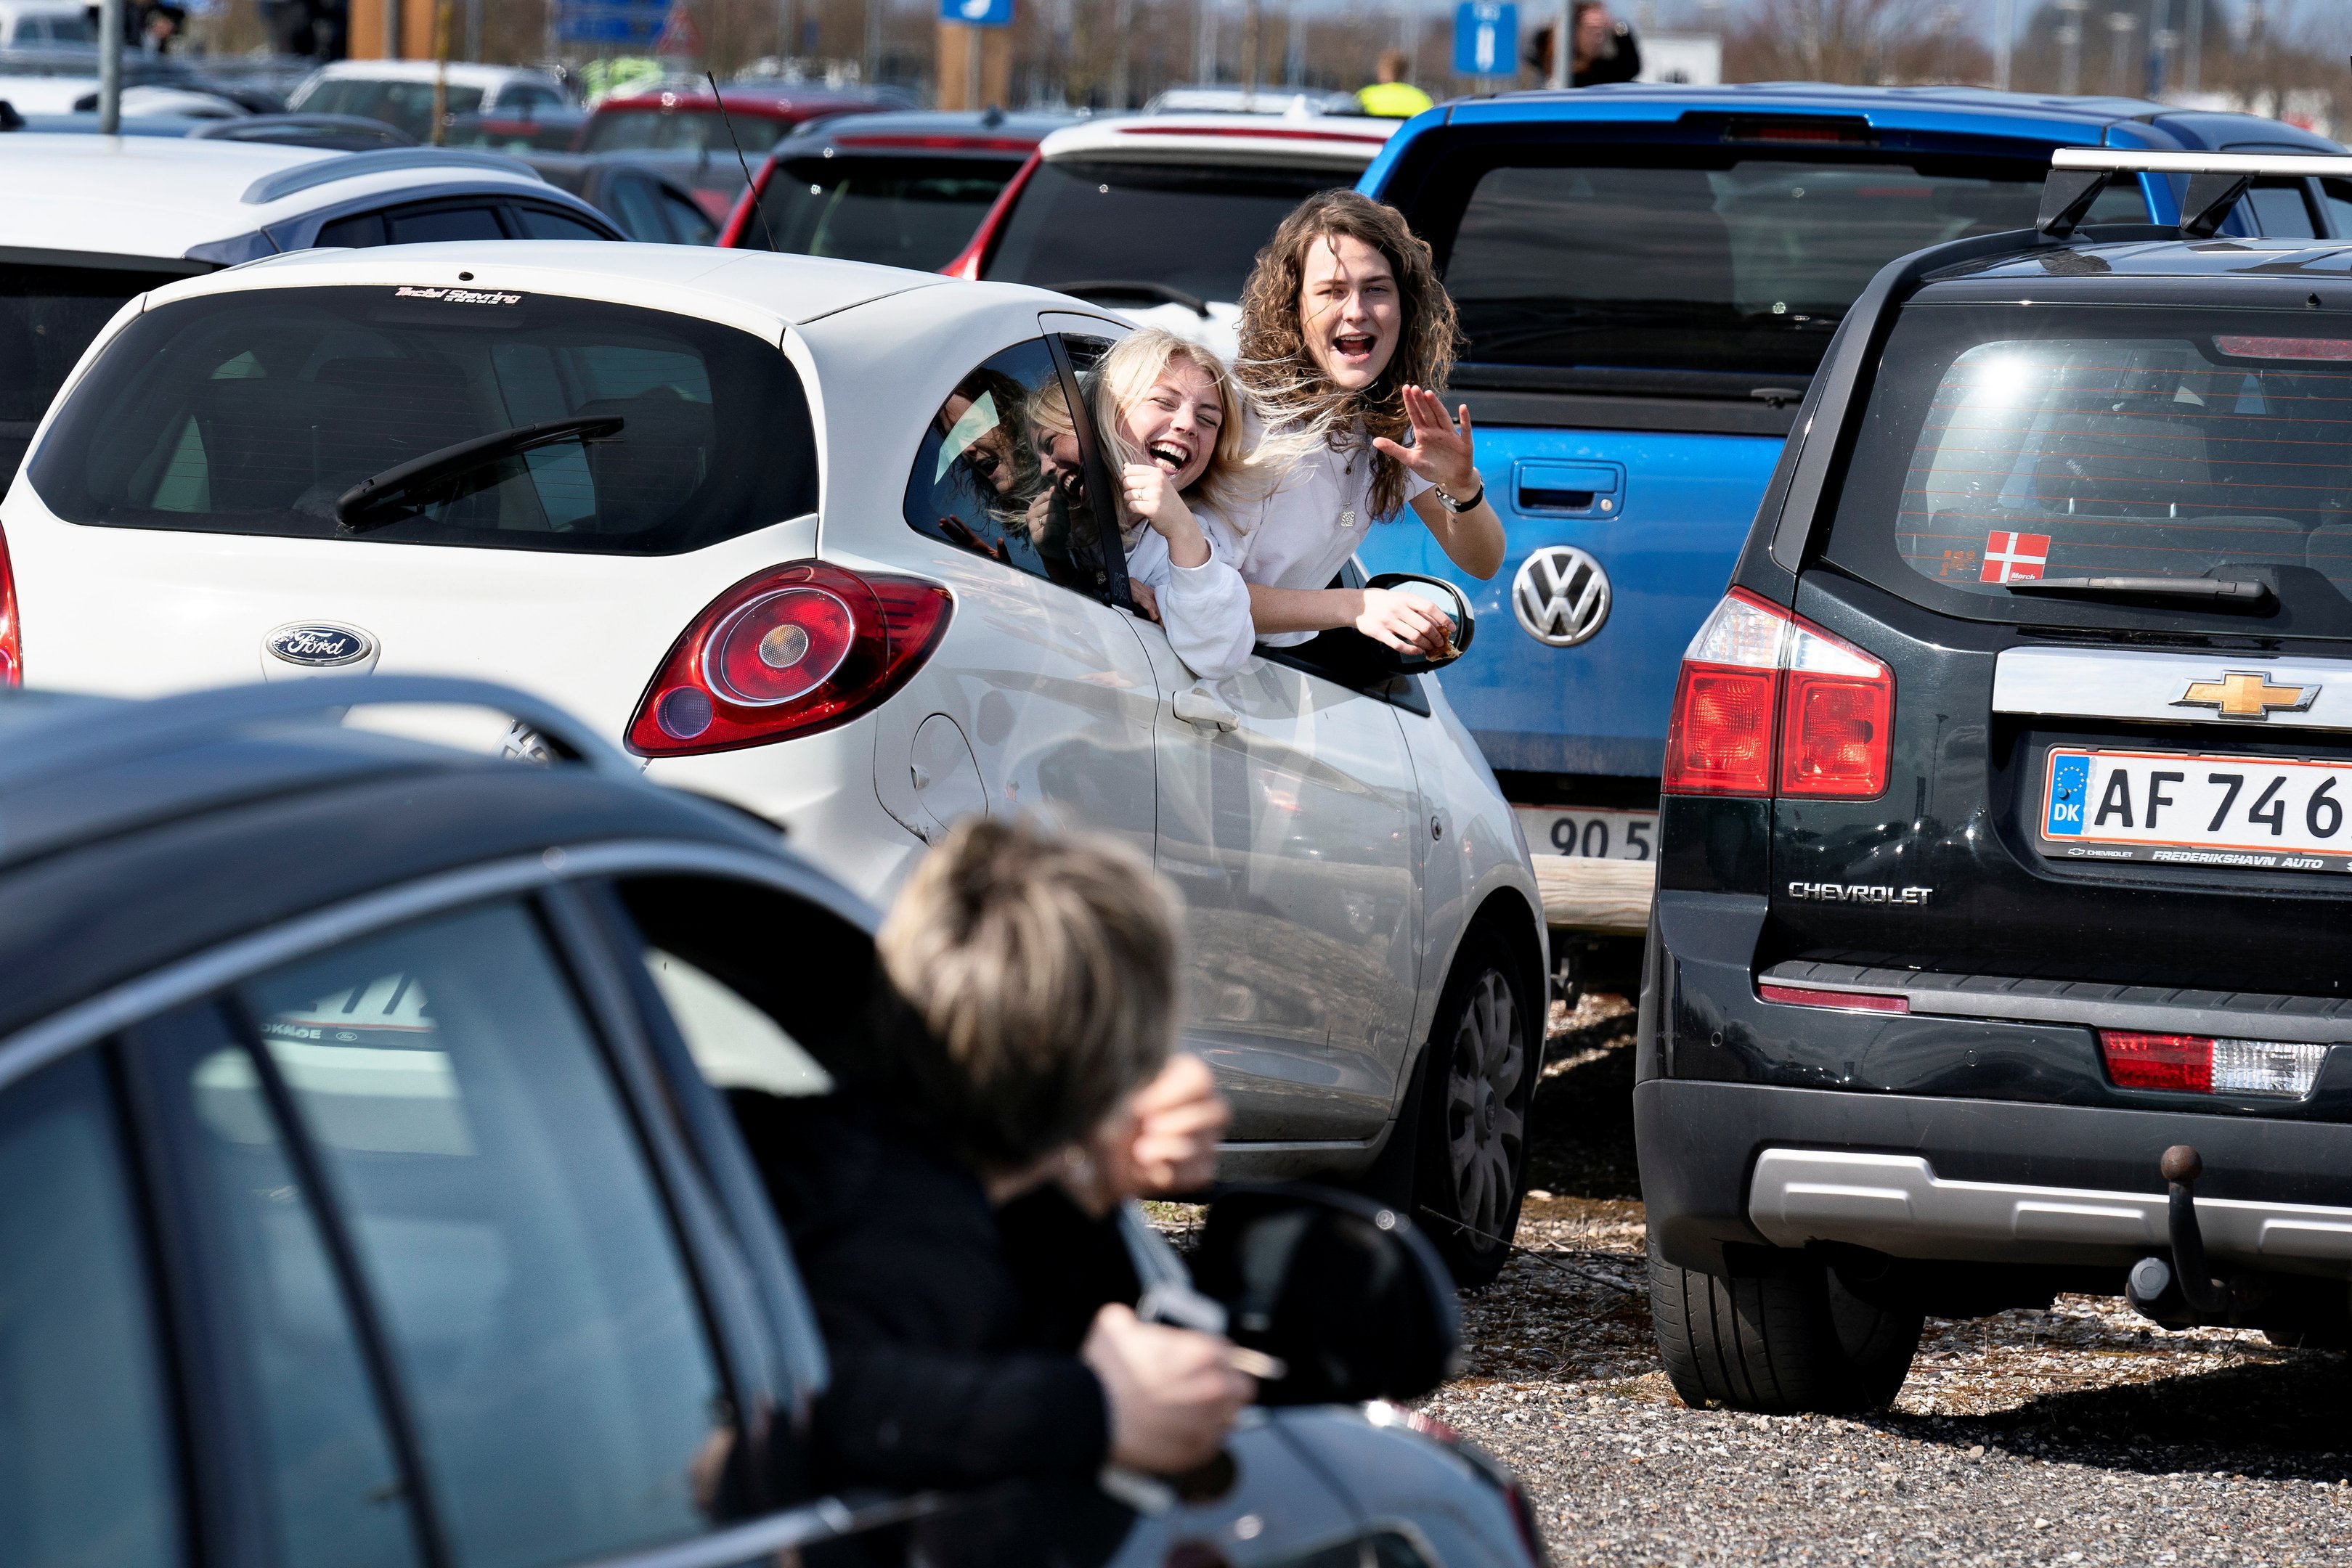 Jovens se cumprimentam de dentro de carros para serviço de Páscoa em estacionamento, na Dinamarca